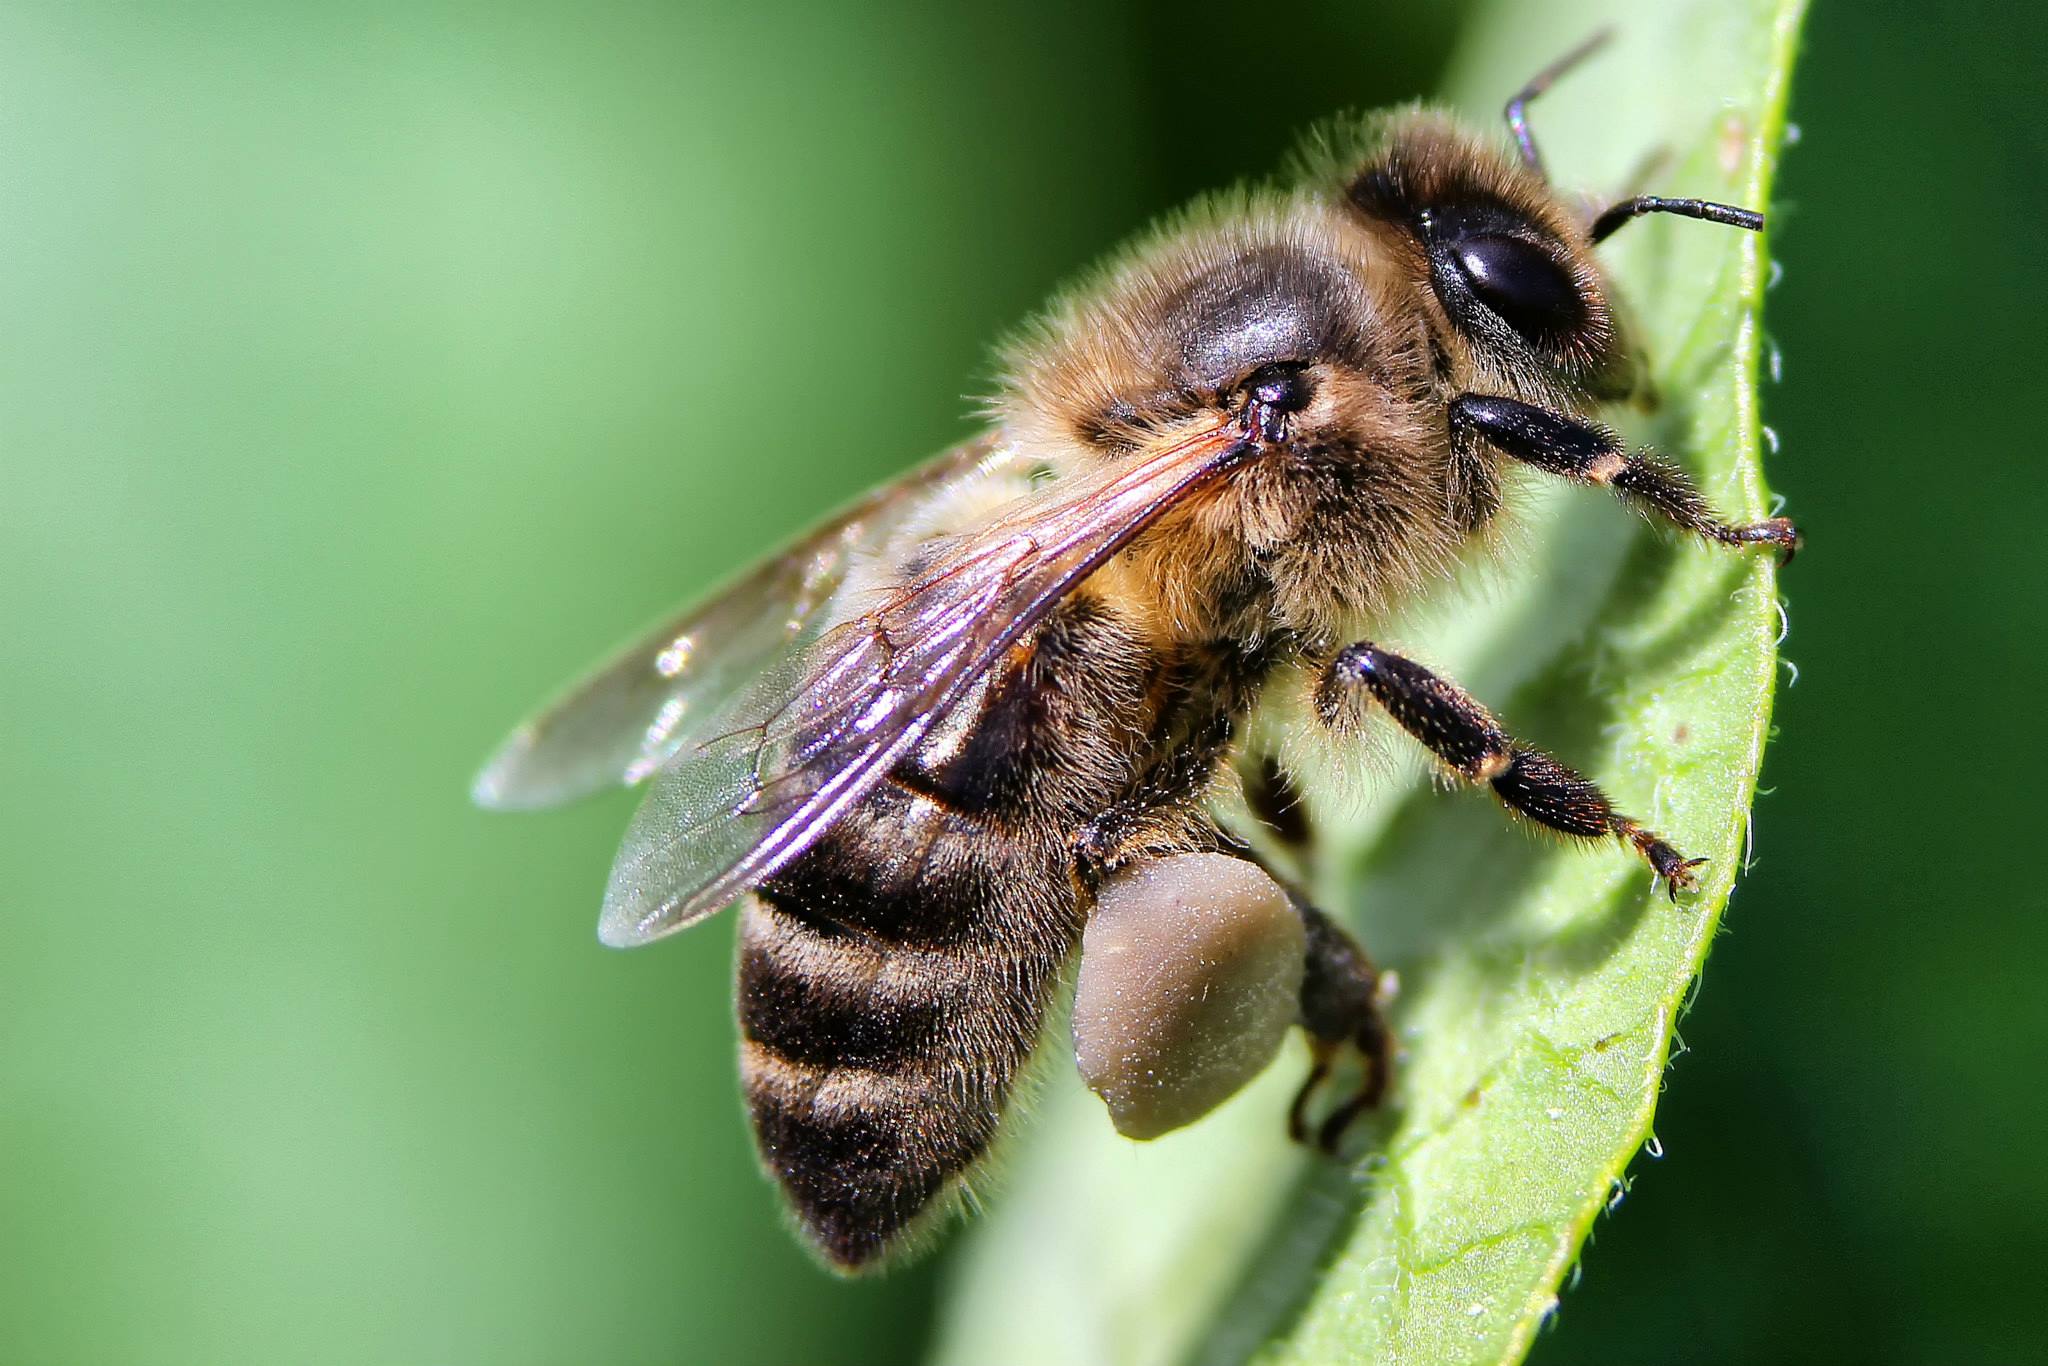 13 a 17 de março | The European Bee Course promove formação em taxonomia das abelhas